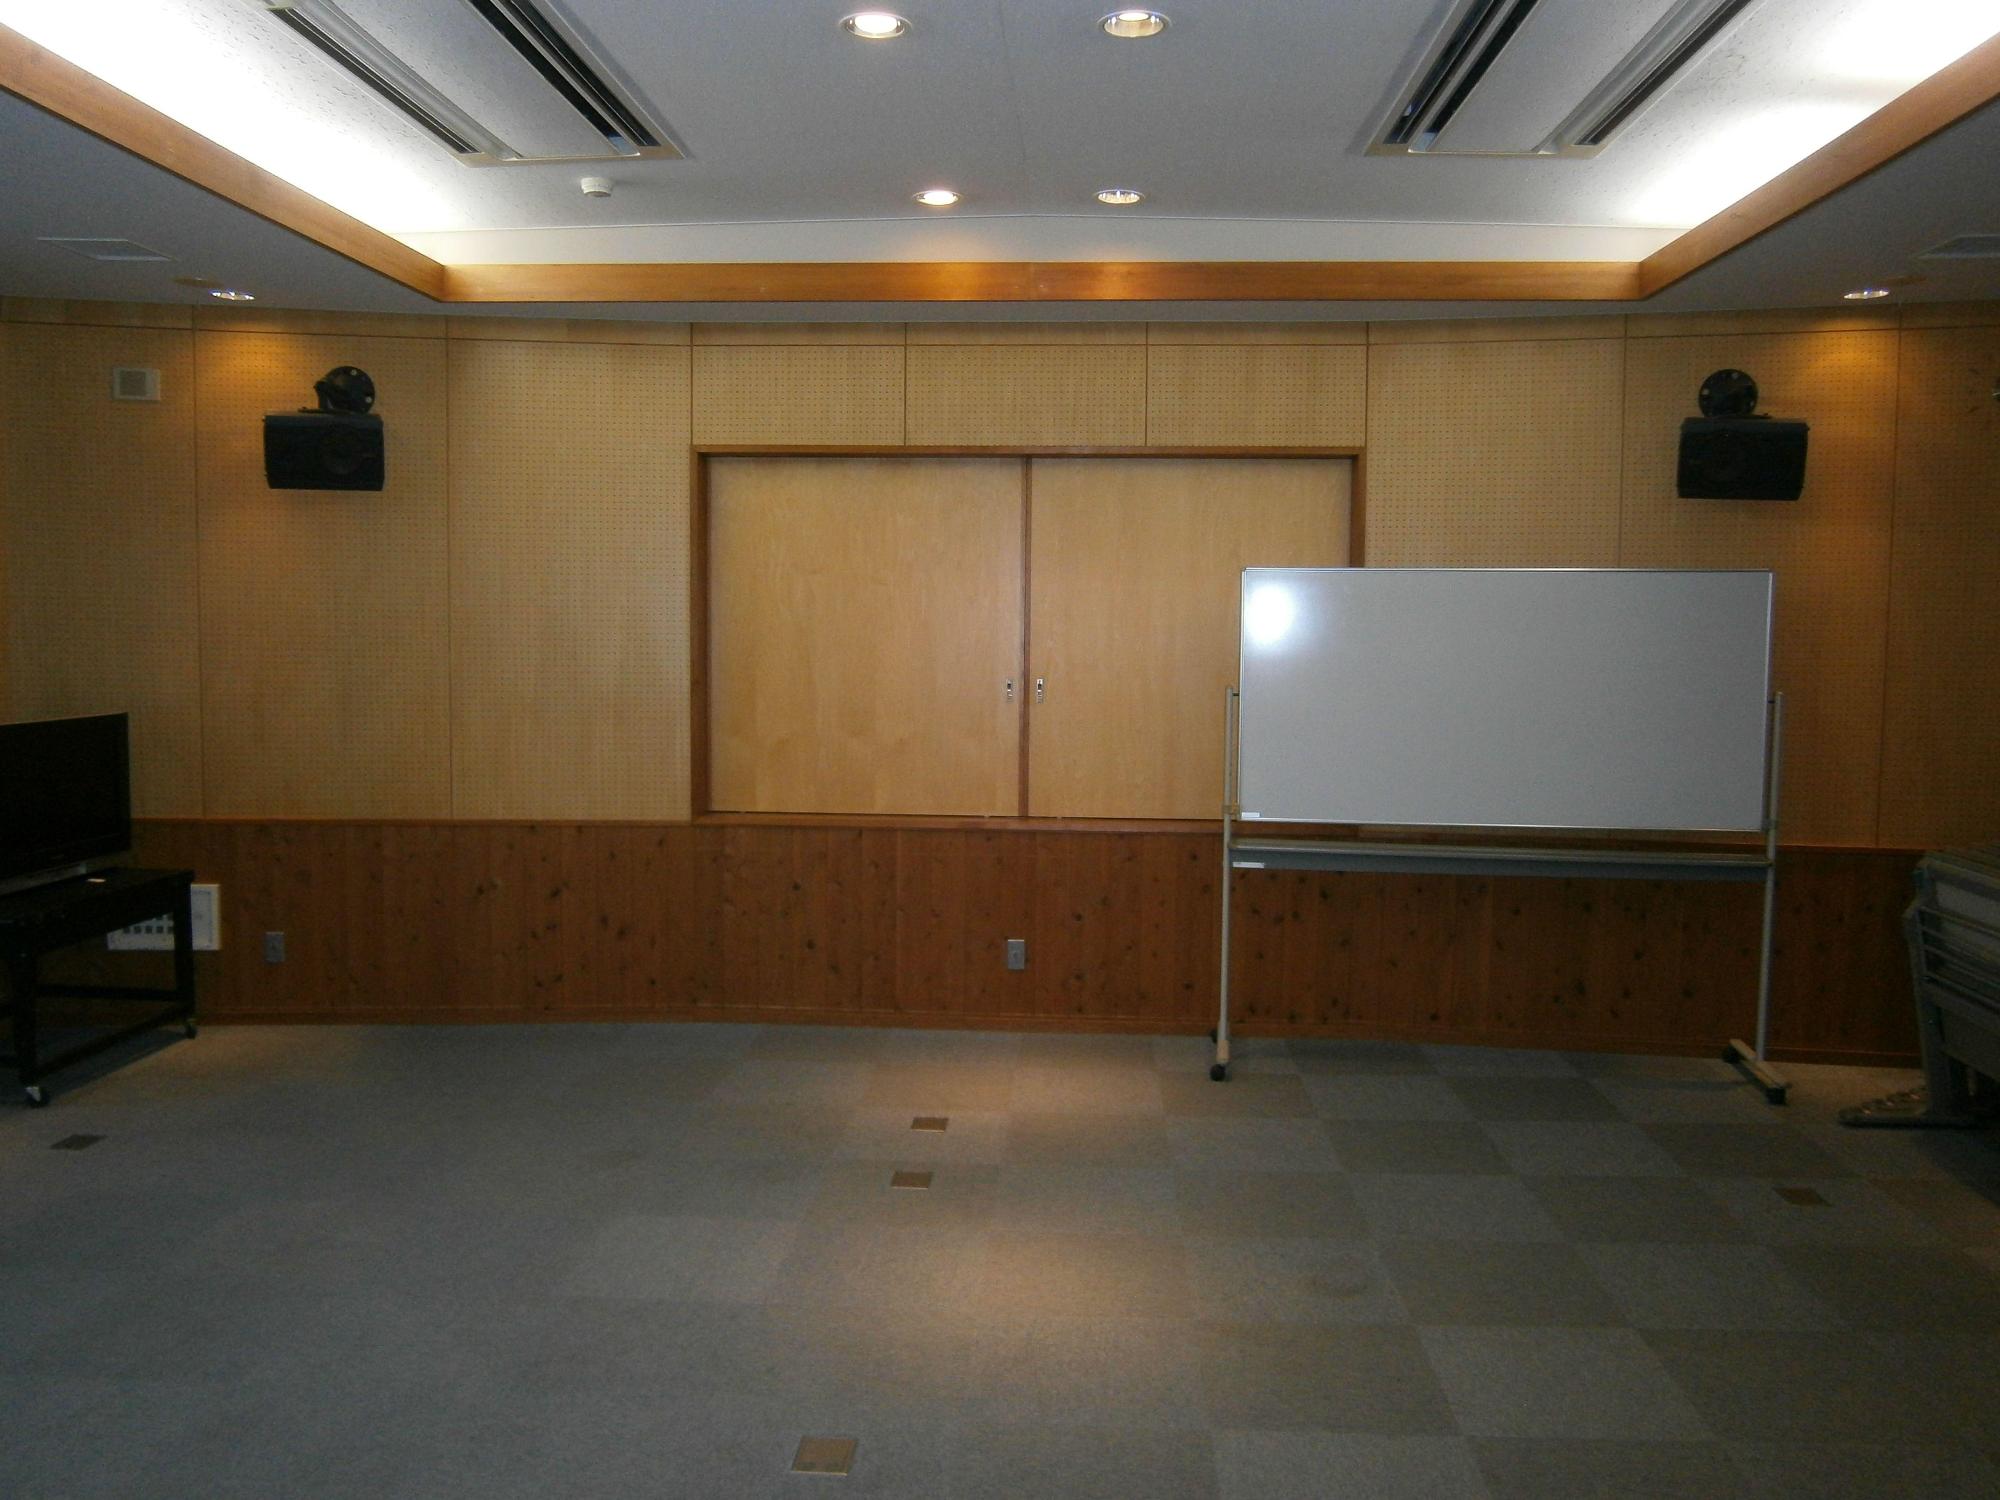 左右の壁上部にスピーカーが設置され、右下にホワイトボード、左に液晶テレビのある視聴覚室の写真